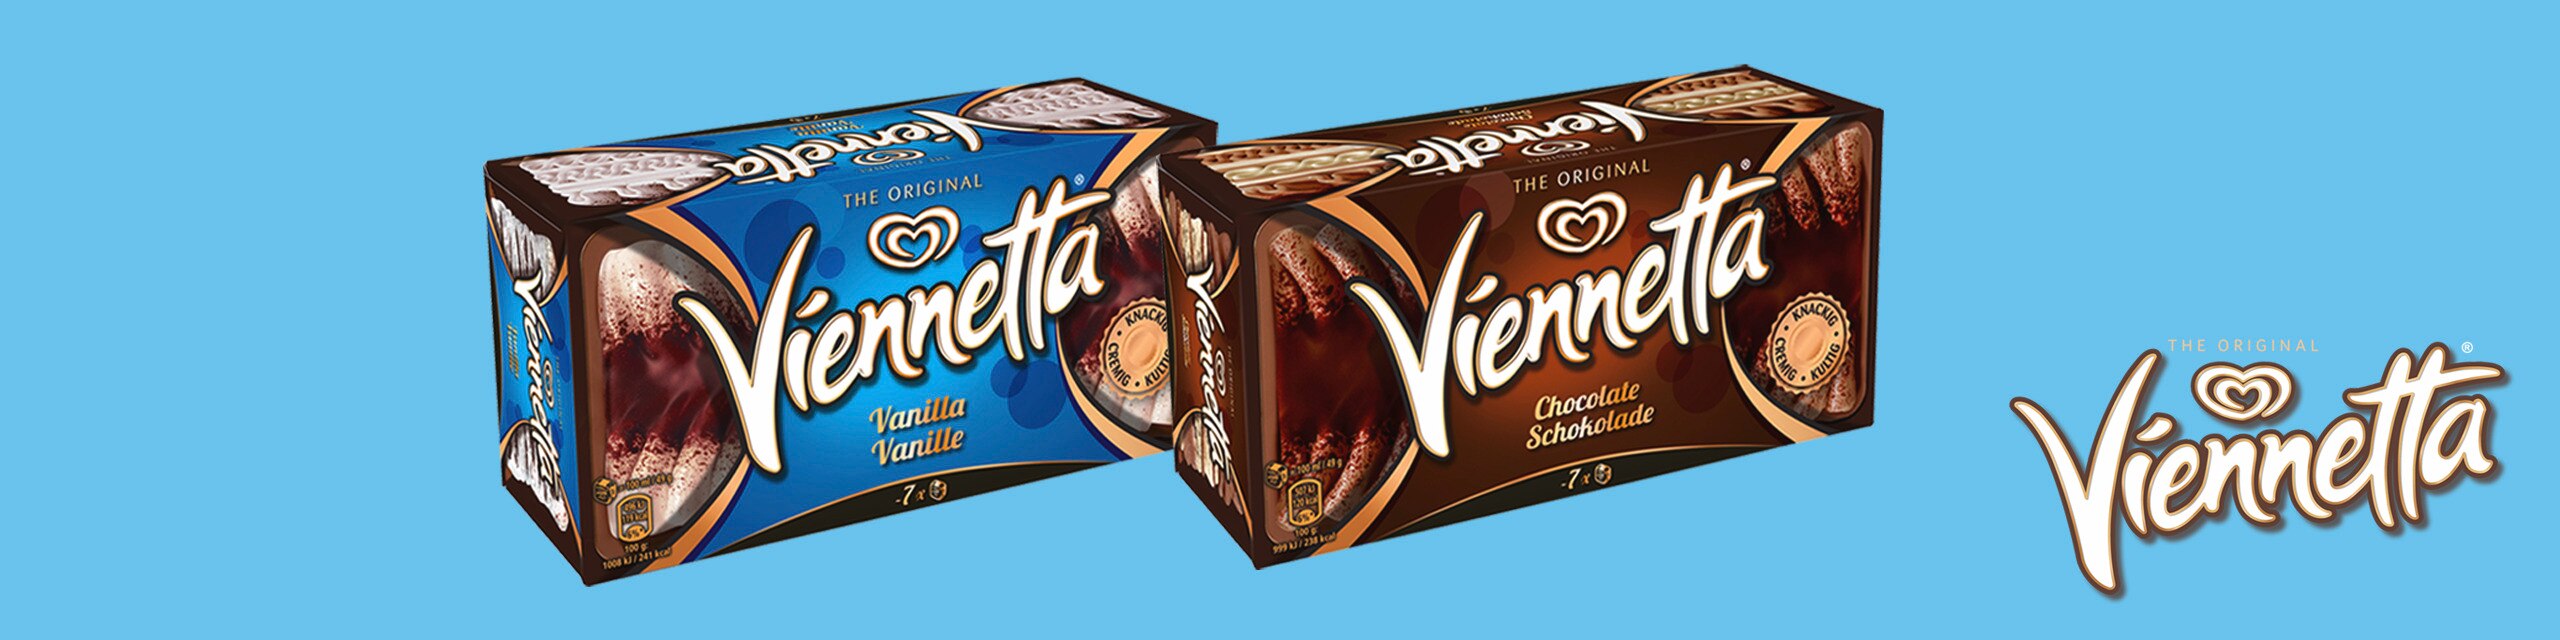 Eiscreme mit Viennetta Logo